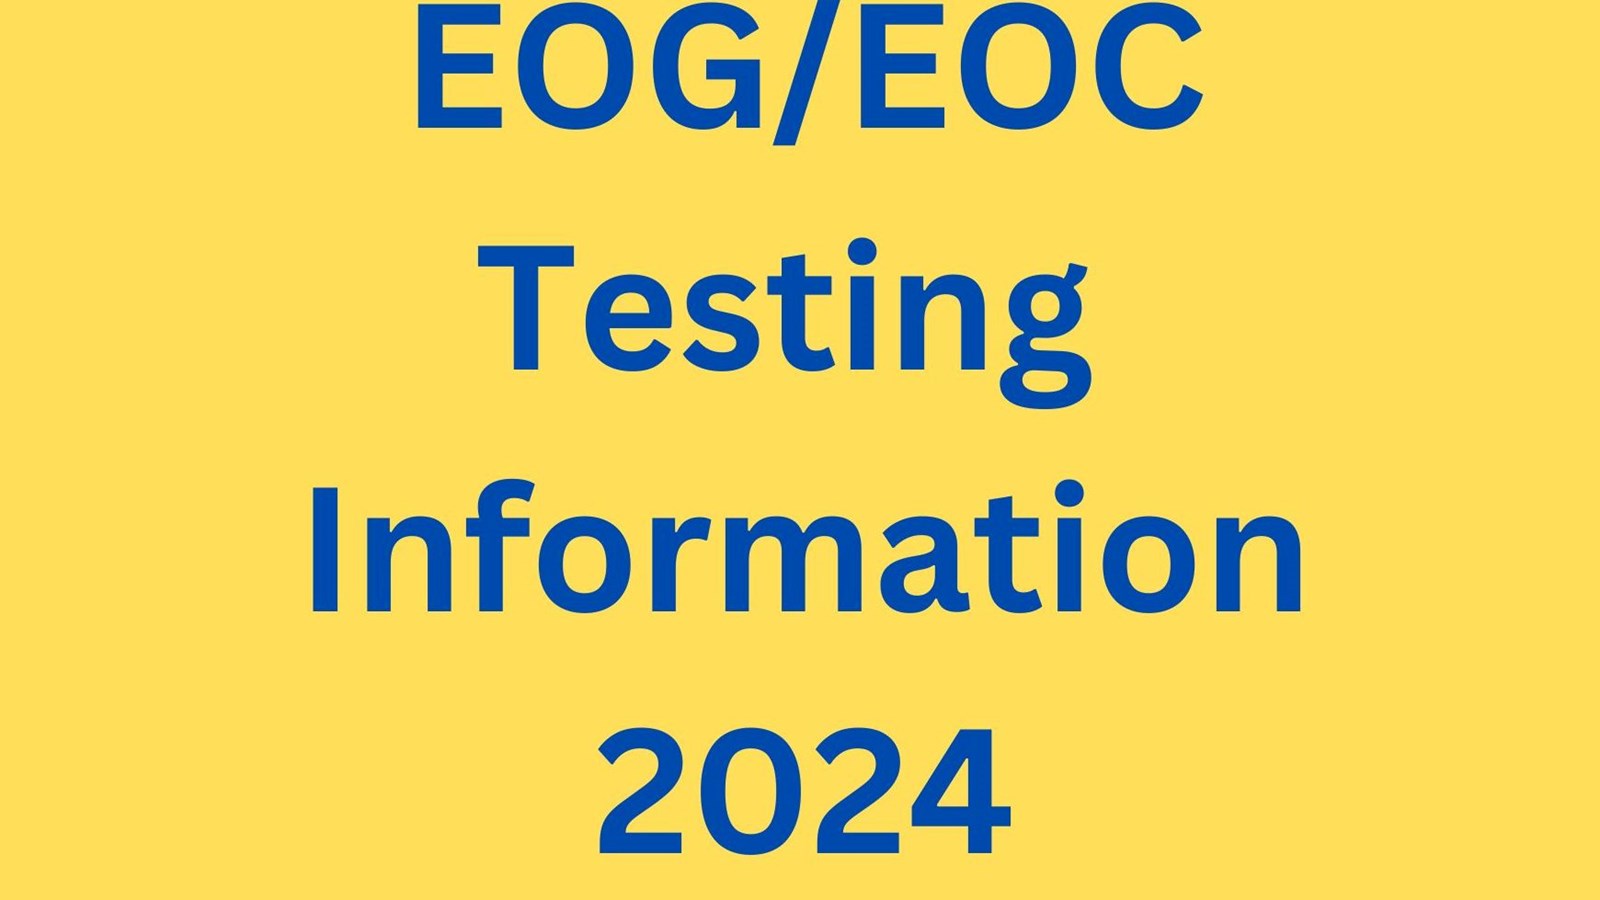 EOG/EOC